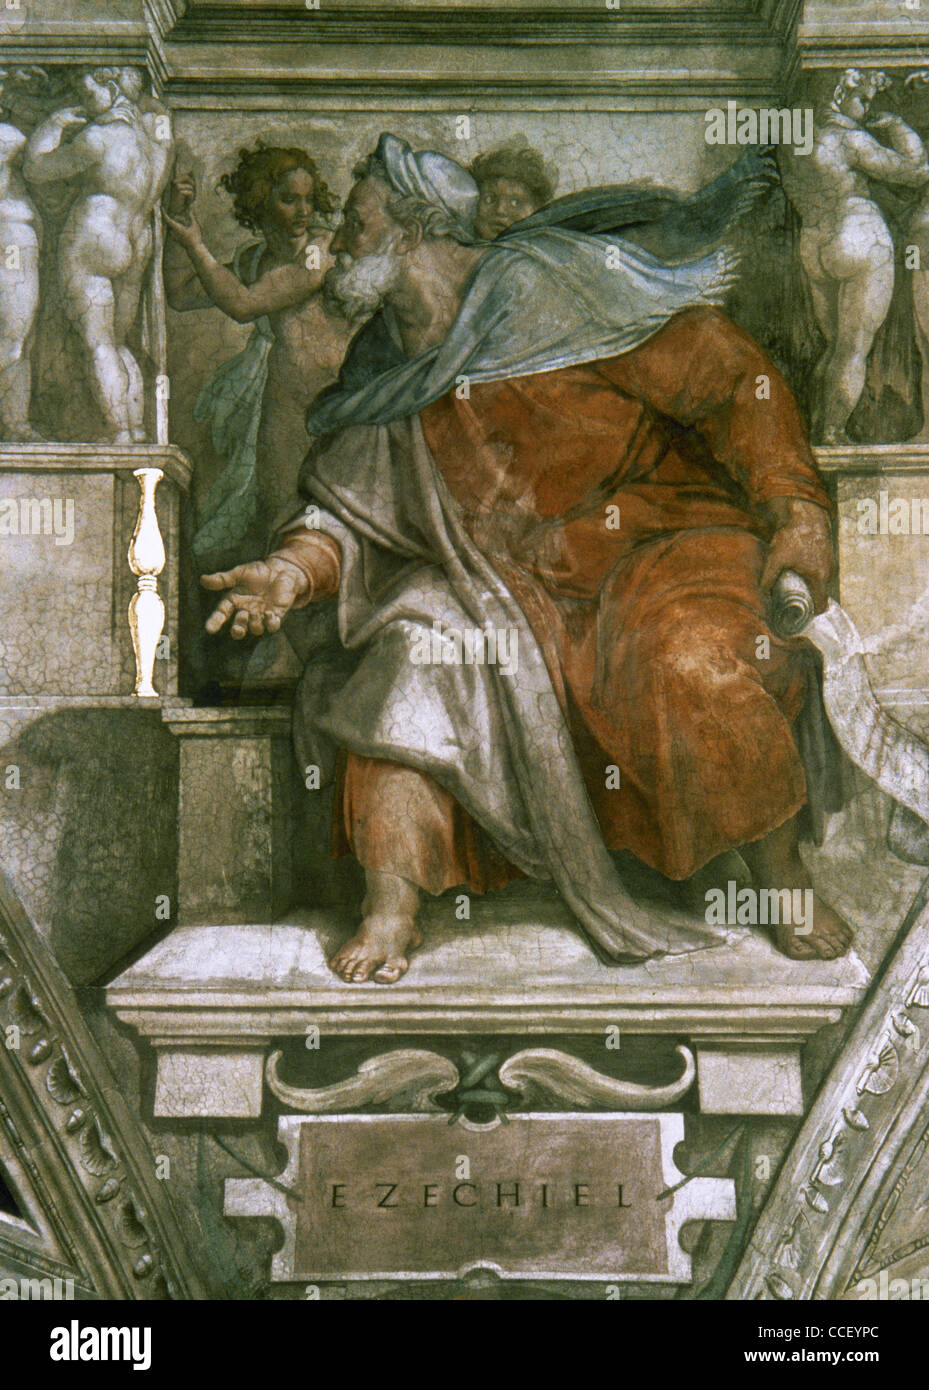 Hesekiel (622-570 v. Chr.). Hebräischen Propheten. Porträt. Fresko von Michelangelo. Decke der Sixtinischen Kapelle. Stockfoto